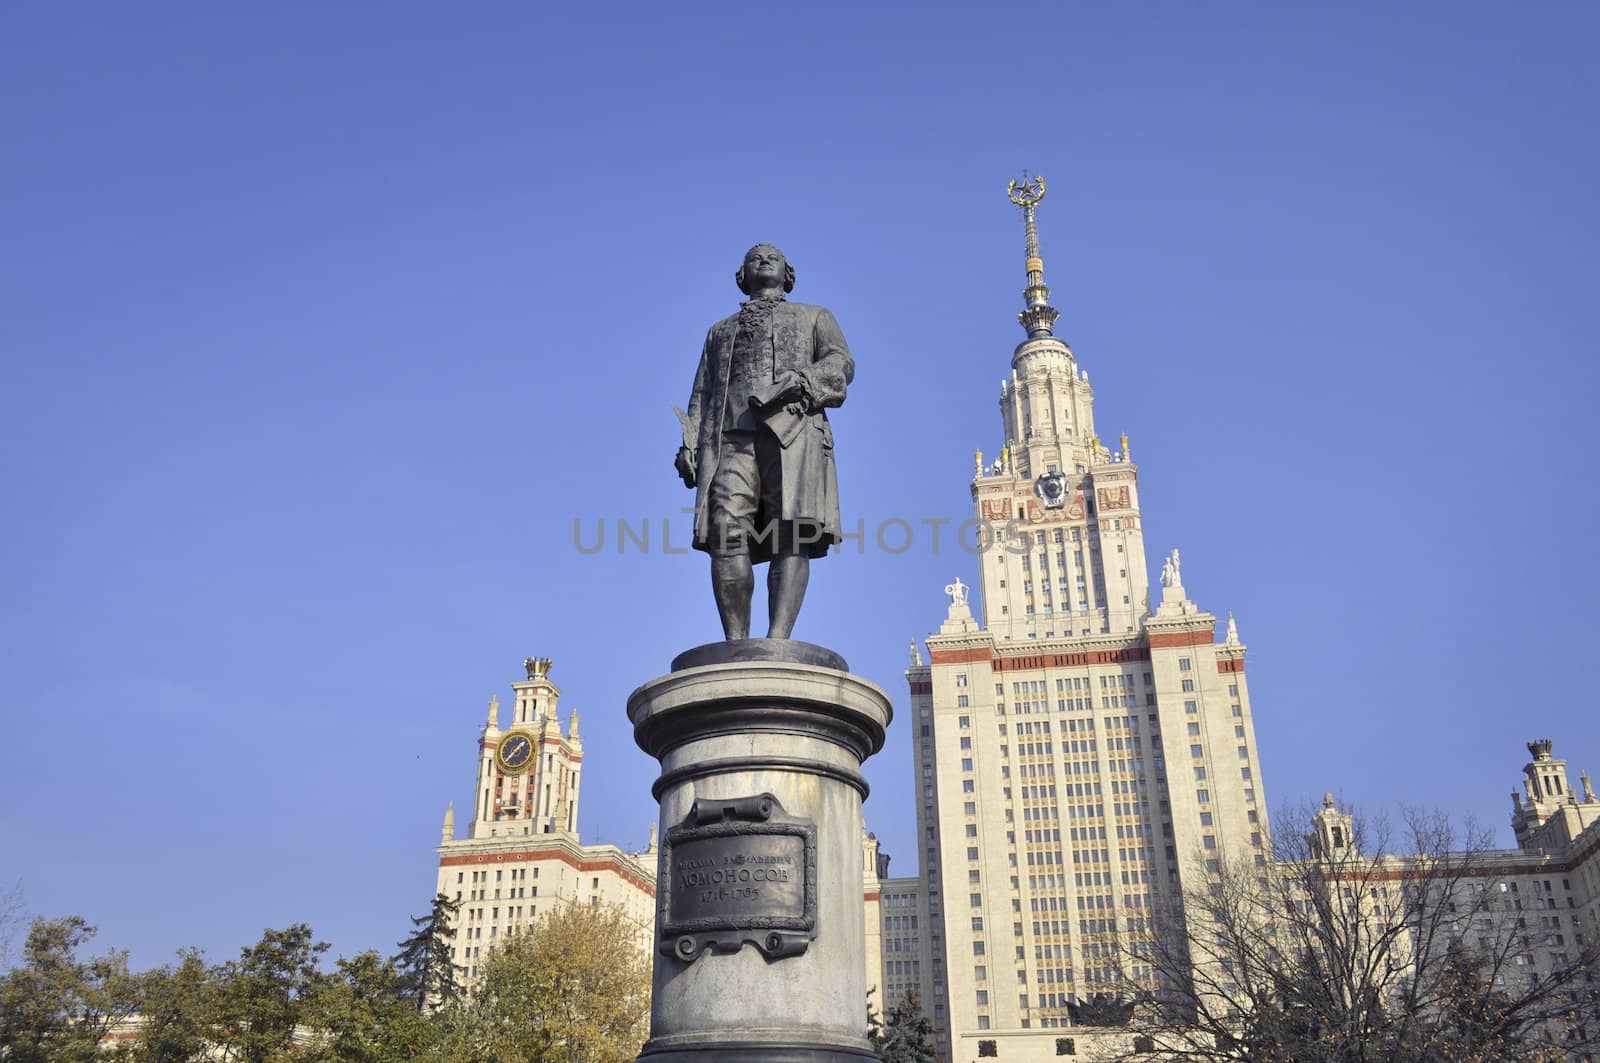 Lomonosov monument by yuriz